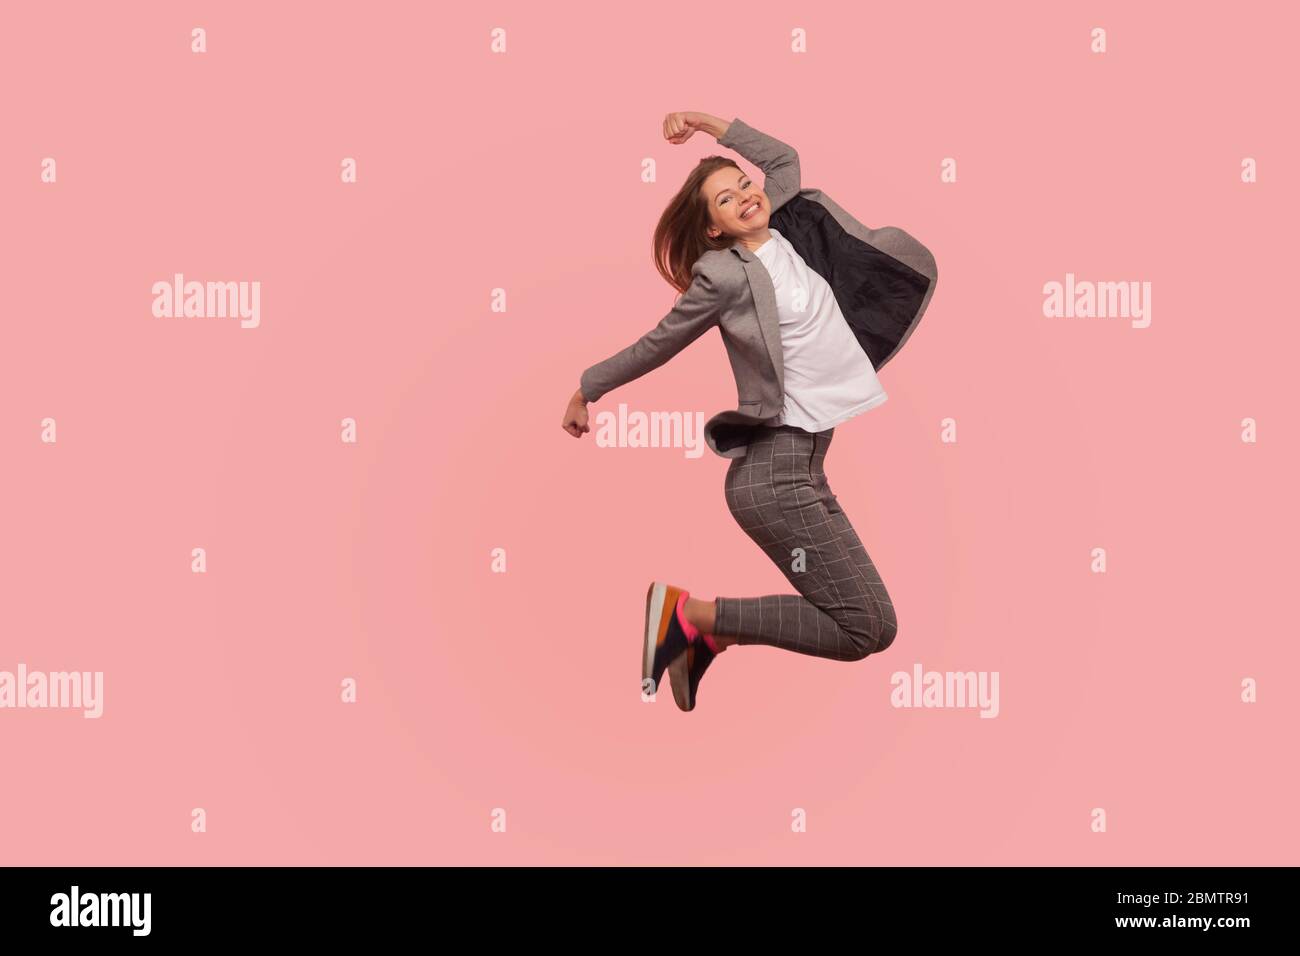 Sono campione! Ritratto di entusiasta e felice businesswoman in tuta elegante jumping spensierato in aria, volare ispirato al successo, celebrare g Foto Stock